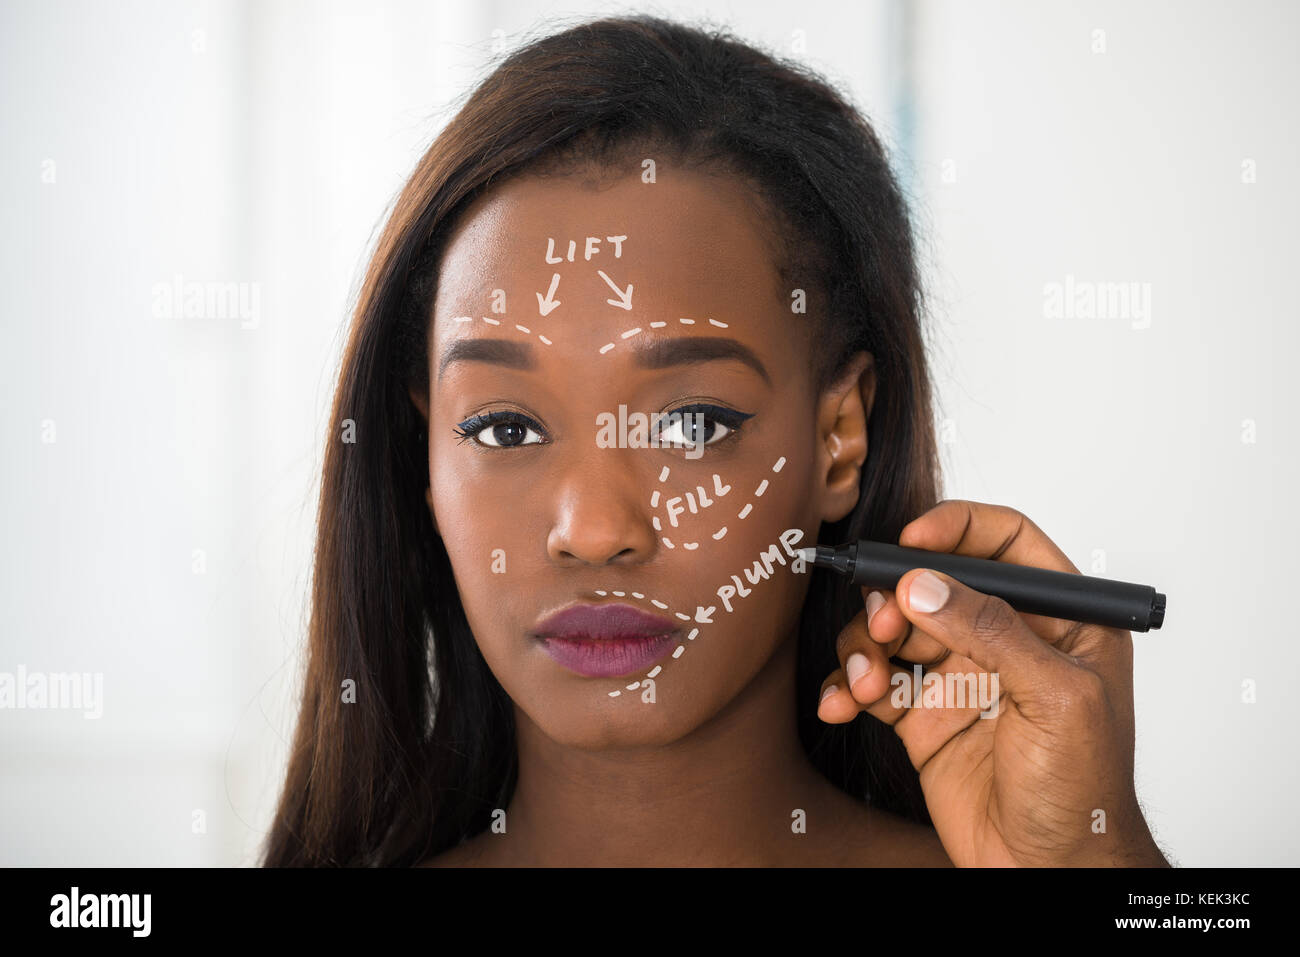 3,935 Liposuction Black Woman Images, Stock Photos, 3D objects, & Vectors